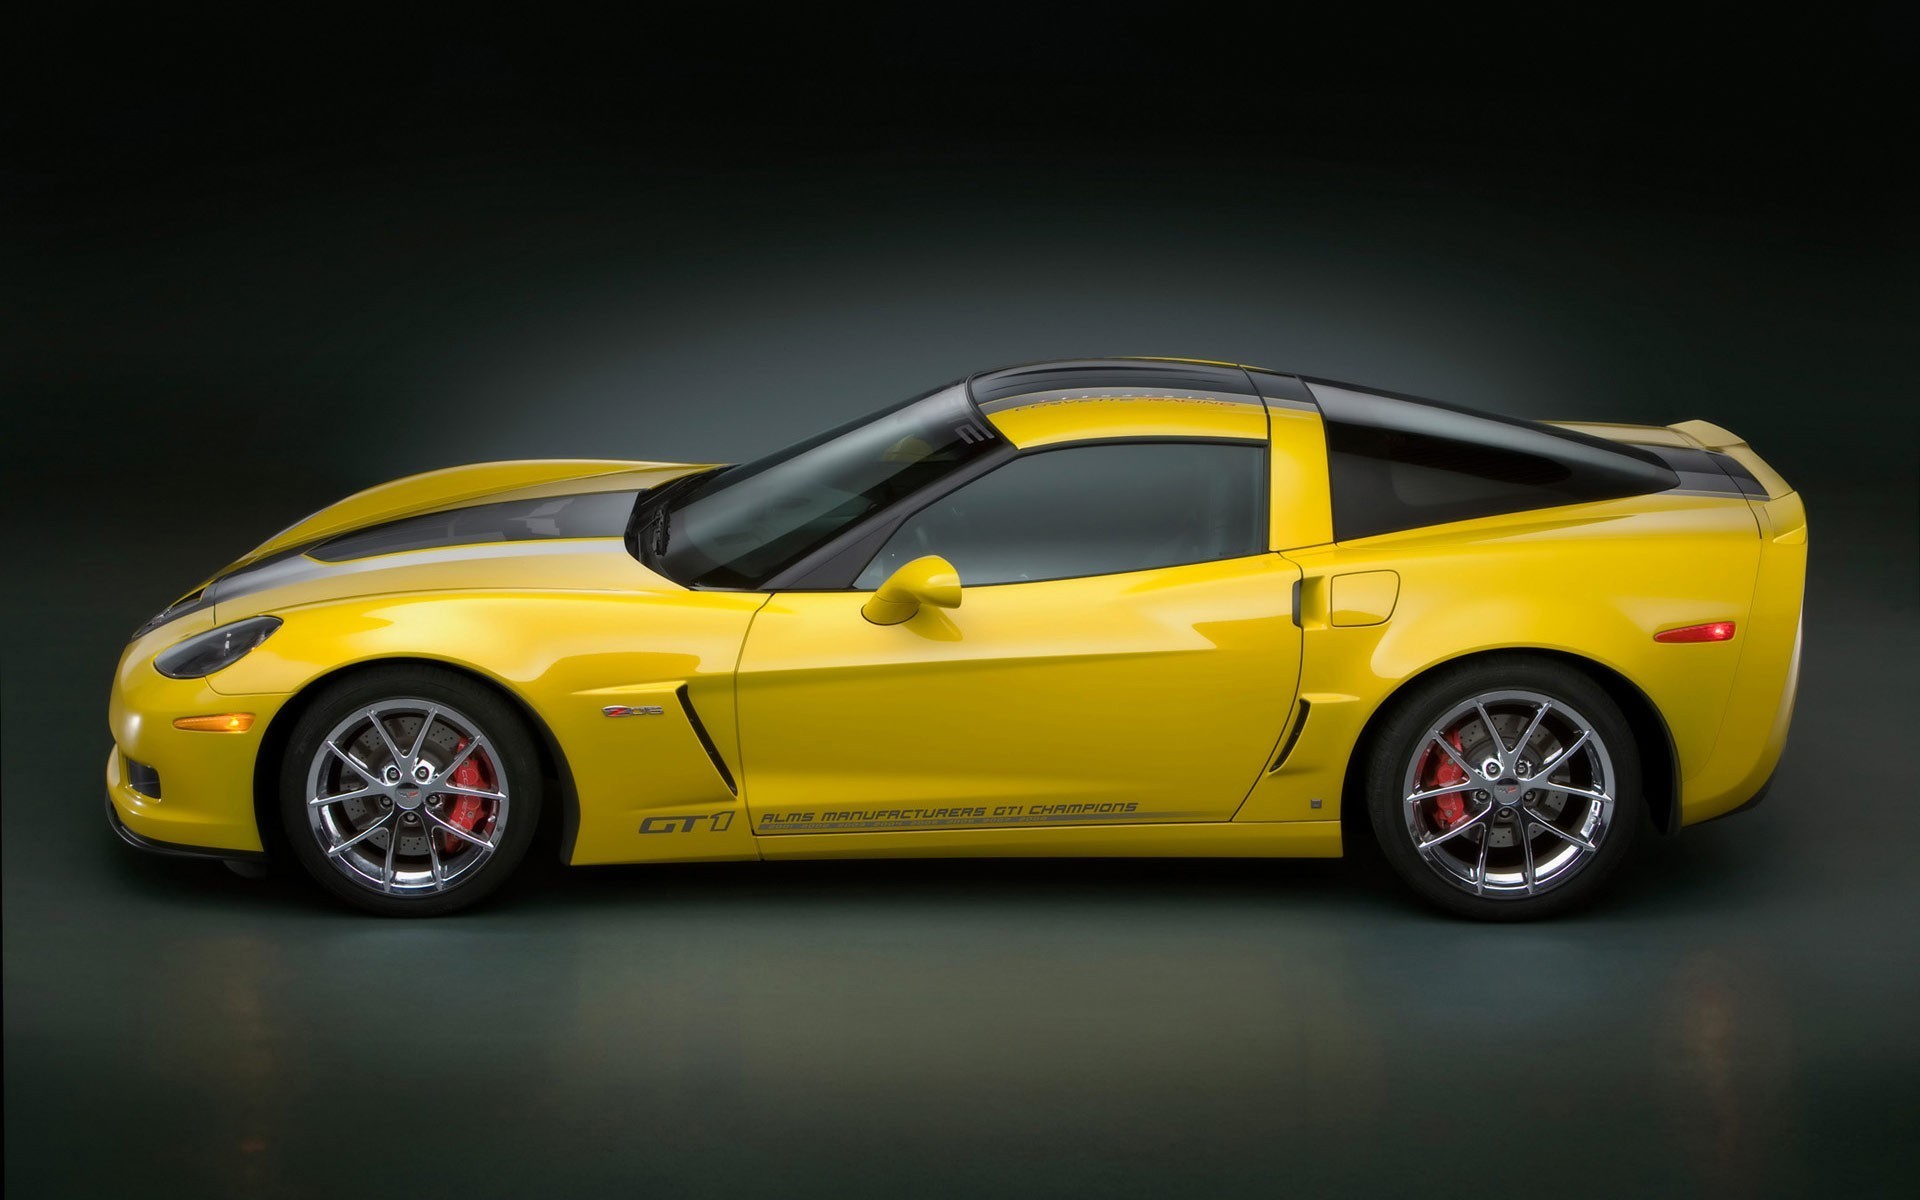 Download mobile wallpaper Chevrolet Corvette Gt1, Chevrolet, Vehicles for free.